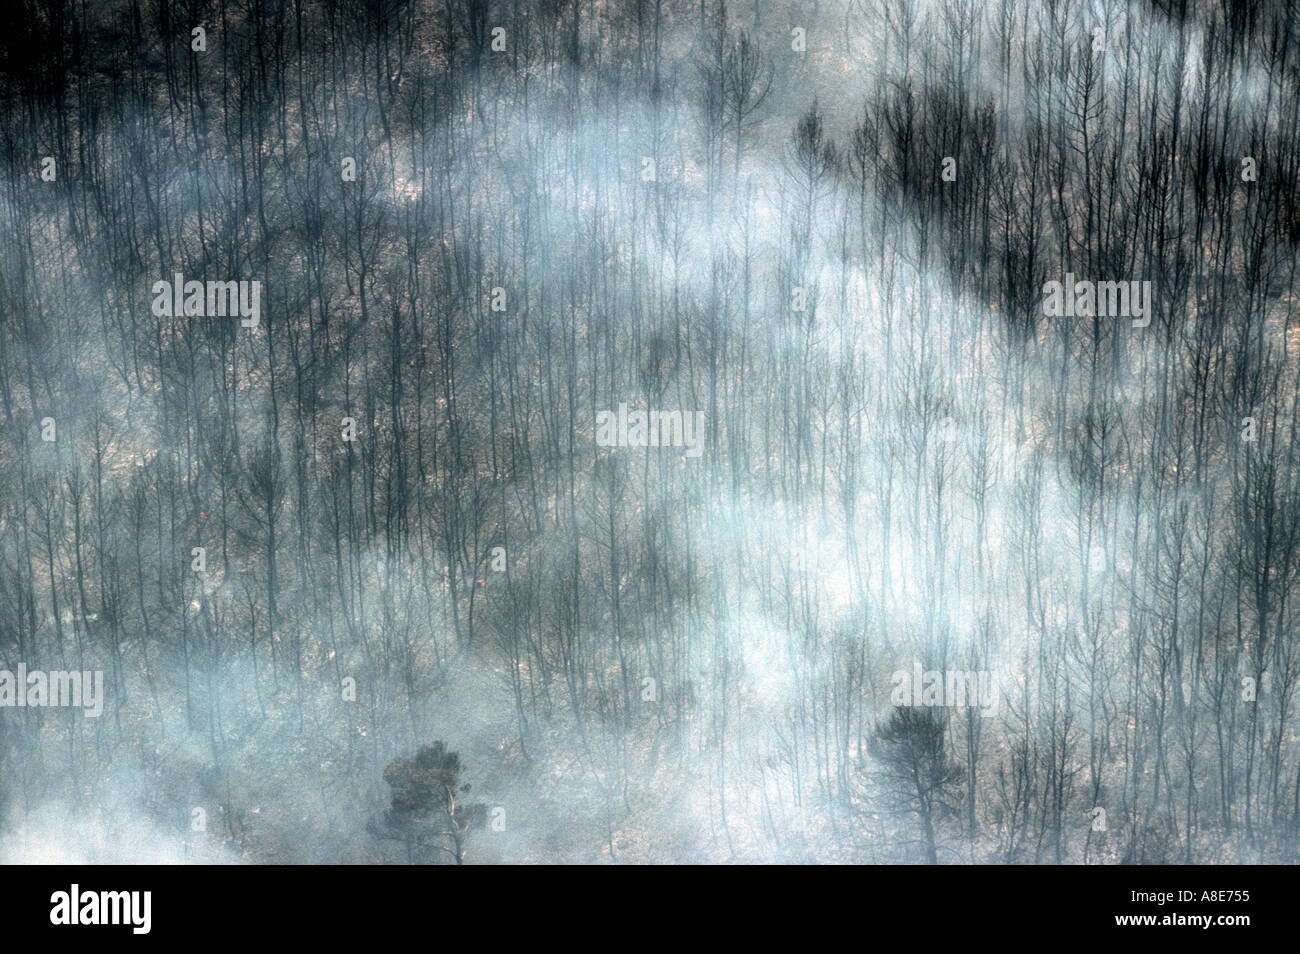 Vue aérienne d'une forêt brûlée, nuage de fumée d'incendie, suite d'un incendie de forêt, Bouches-du-Rhône, Provence, France, Europe, Banque D'Images